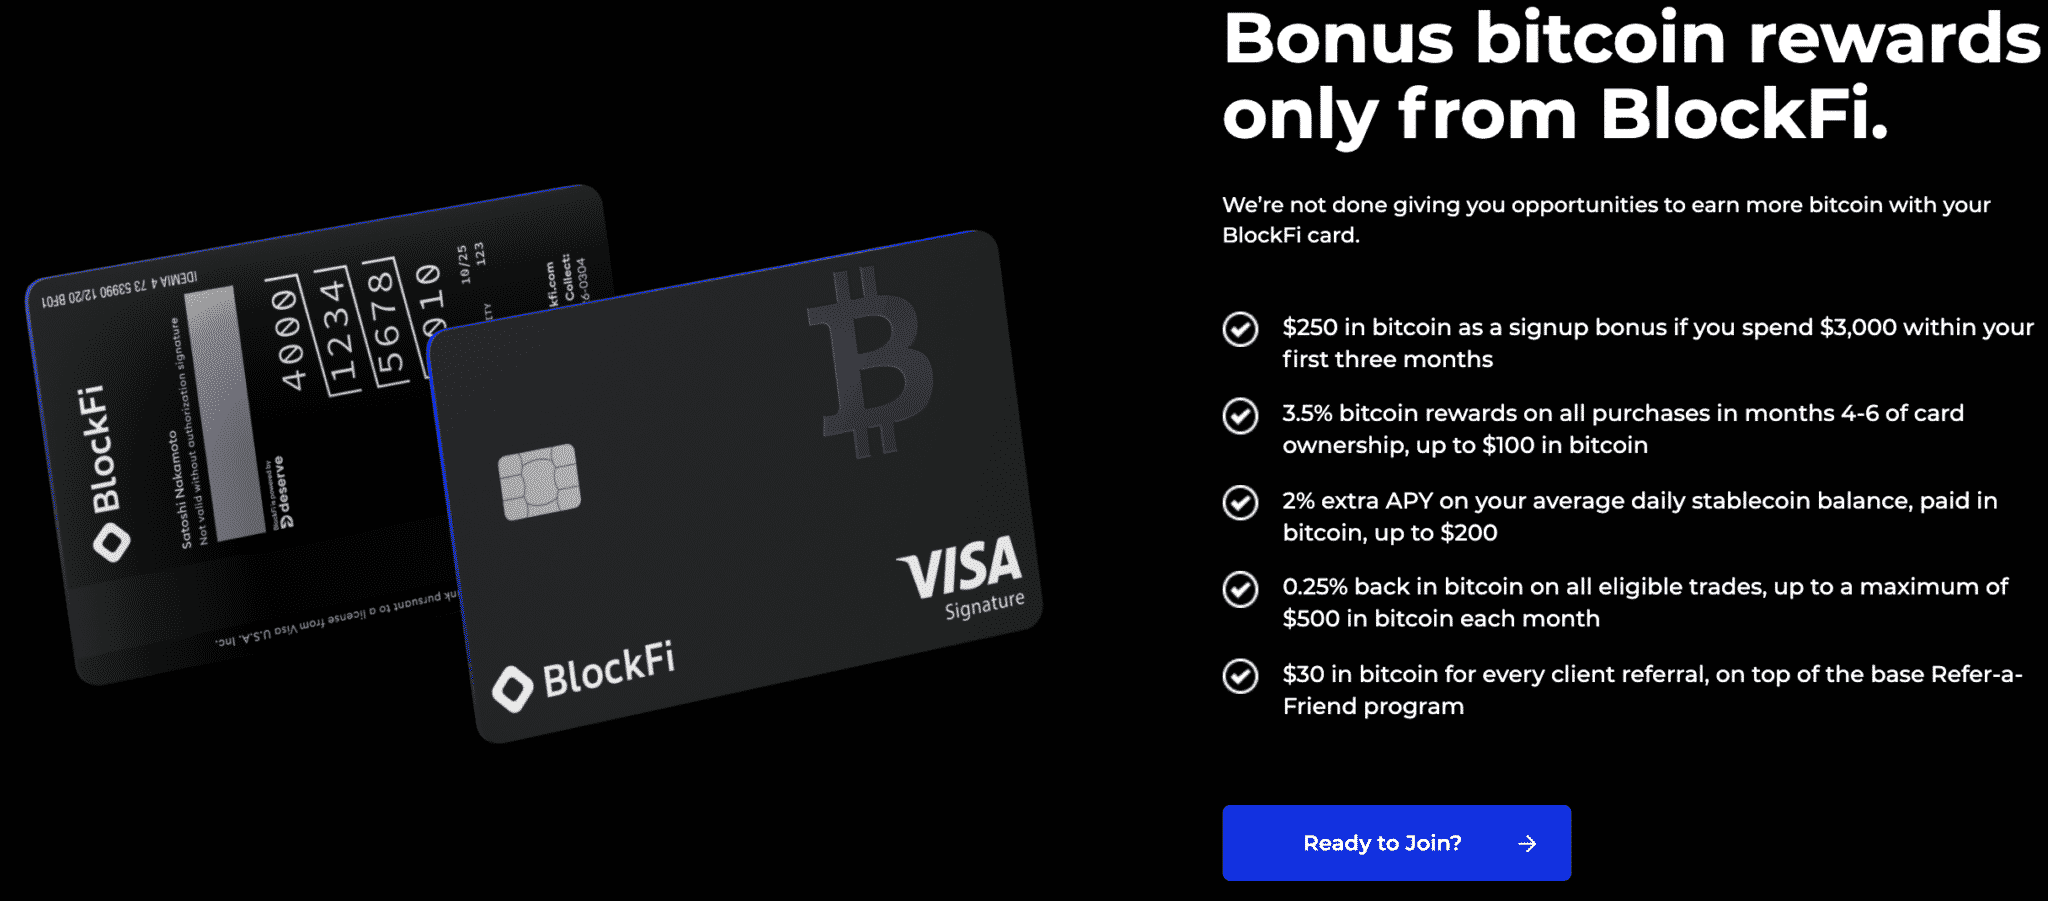 Bonuser fra BlockFis kredittkortlandingsside